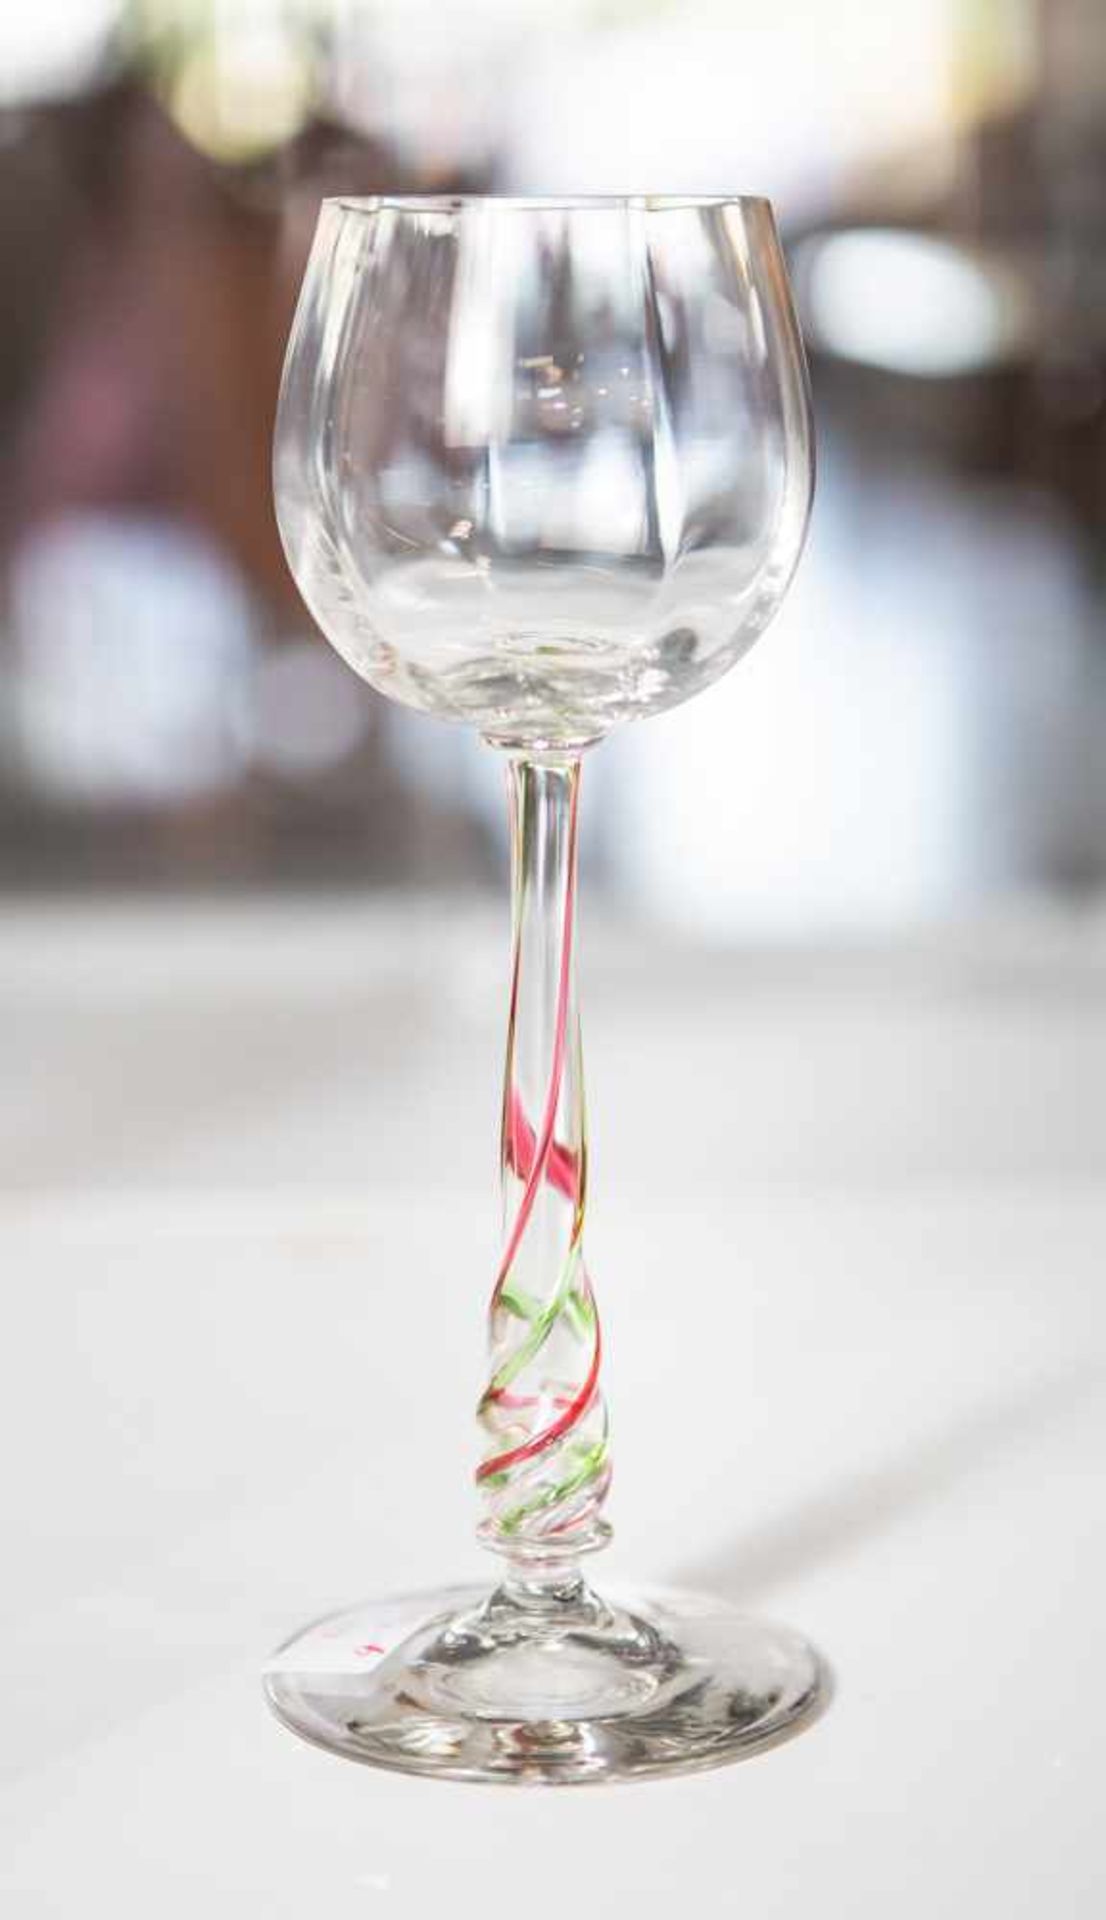 Stengelglas, farbloses Glas, gedrehter Stiel mit eingeschmolzenen Fäden in Rot und Grün, Kuppa